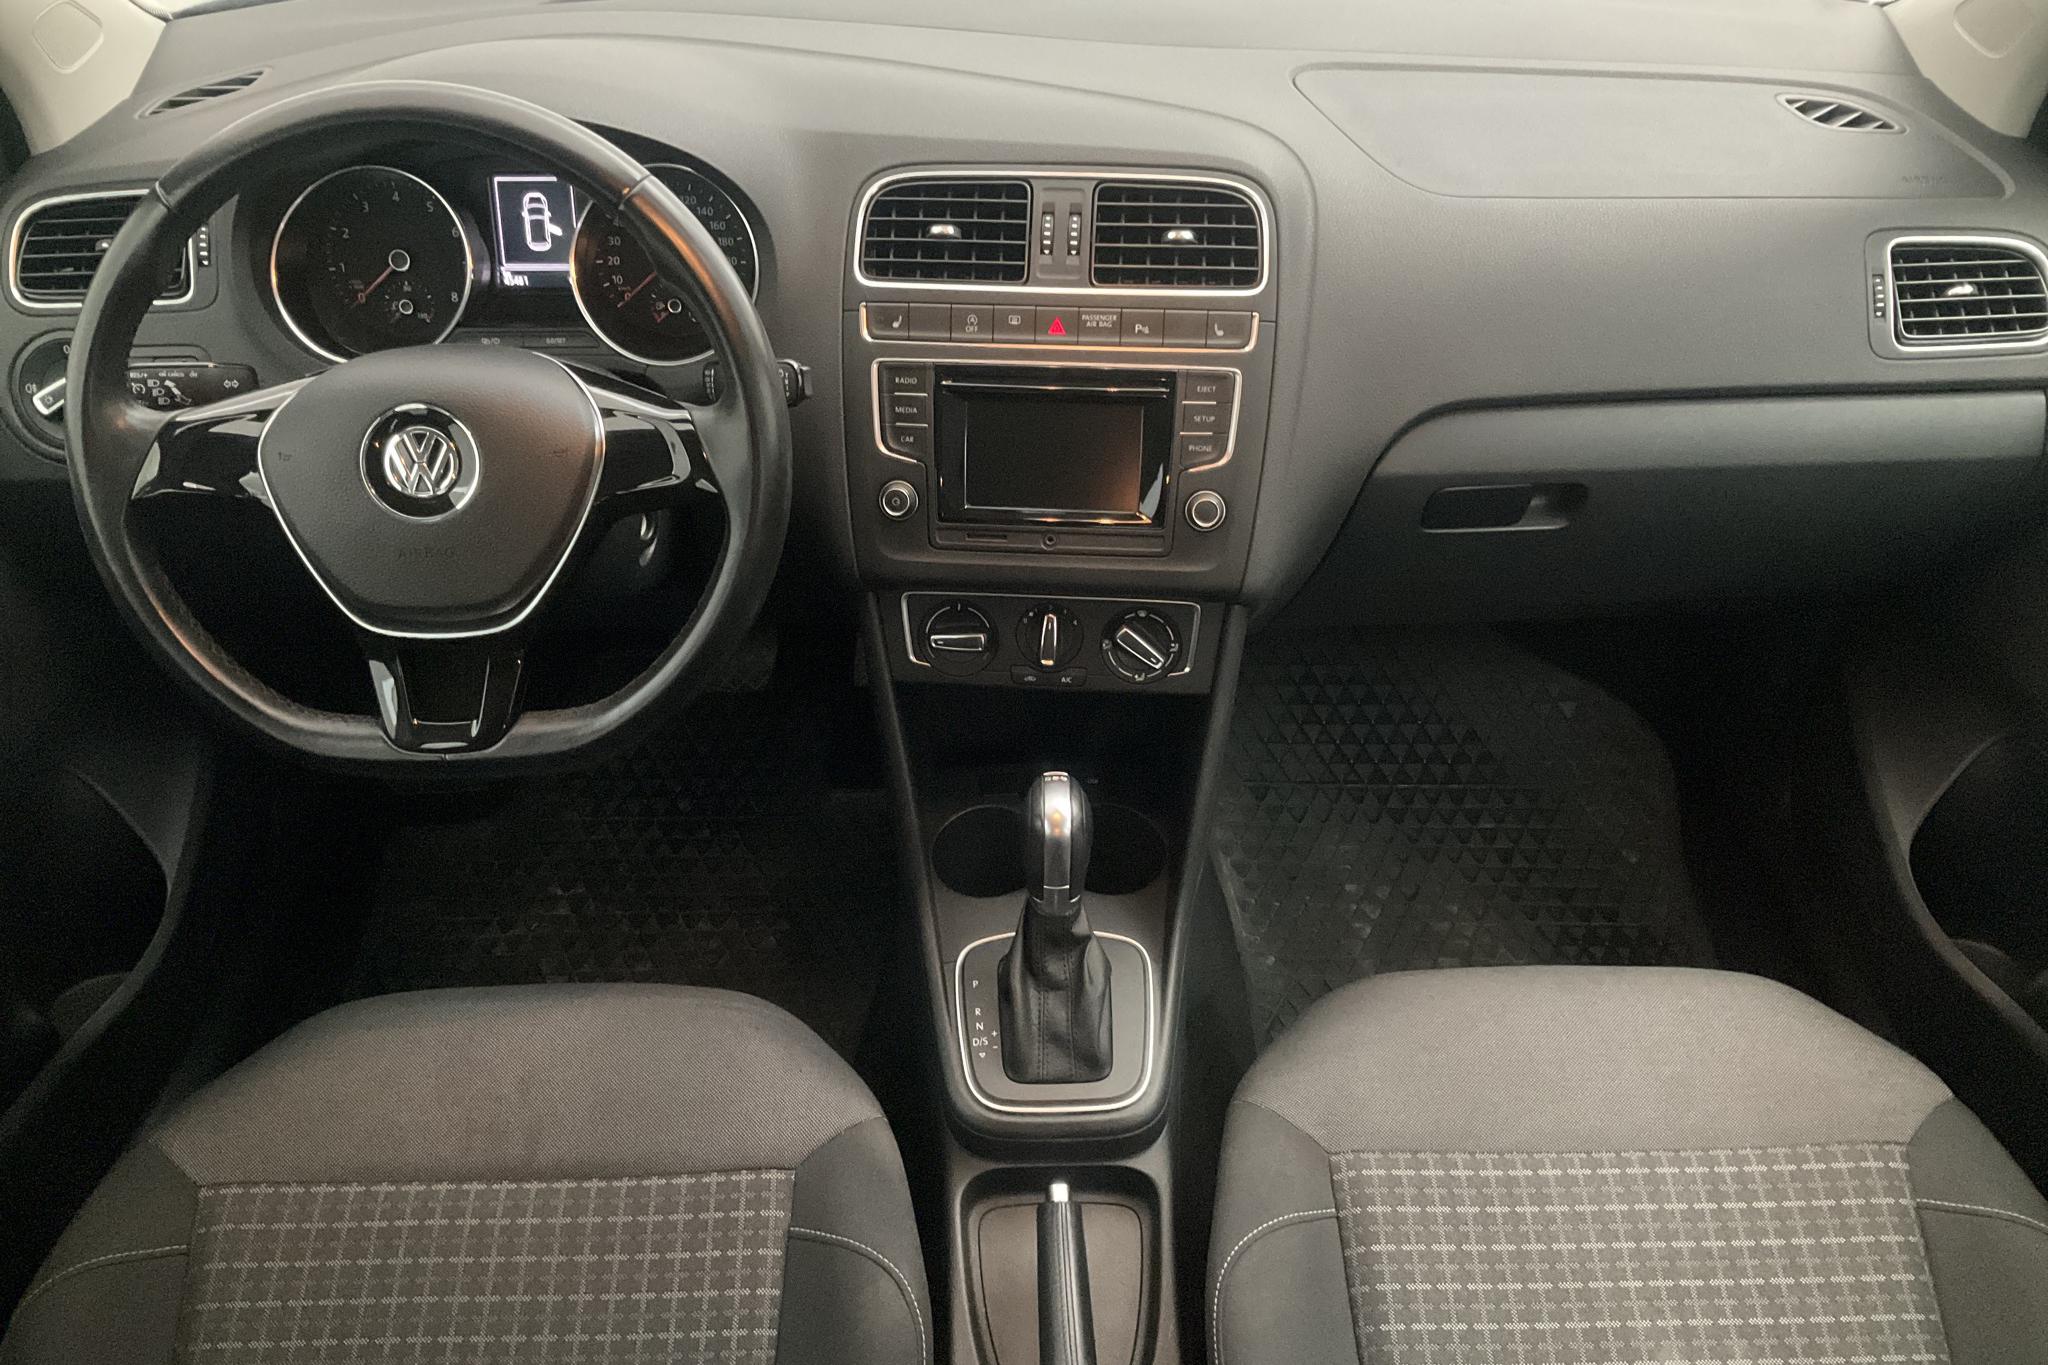 VW Polo 1.2 TSI 5dr (90hk) - 4 549 mil - Automat - svart - 2016